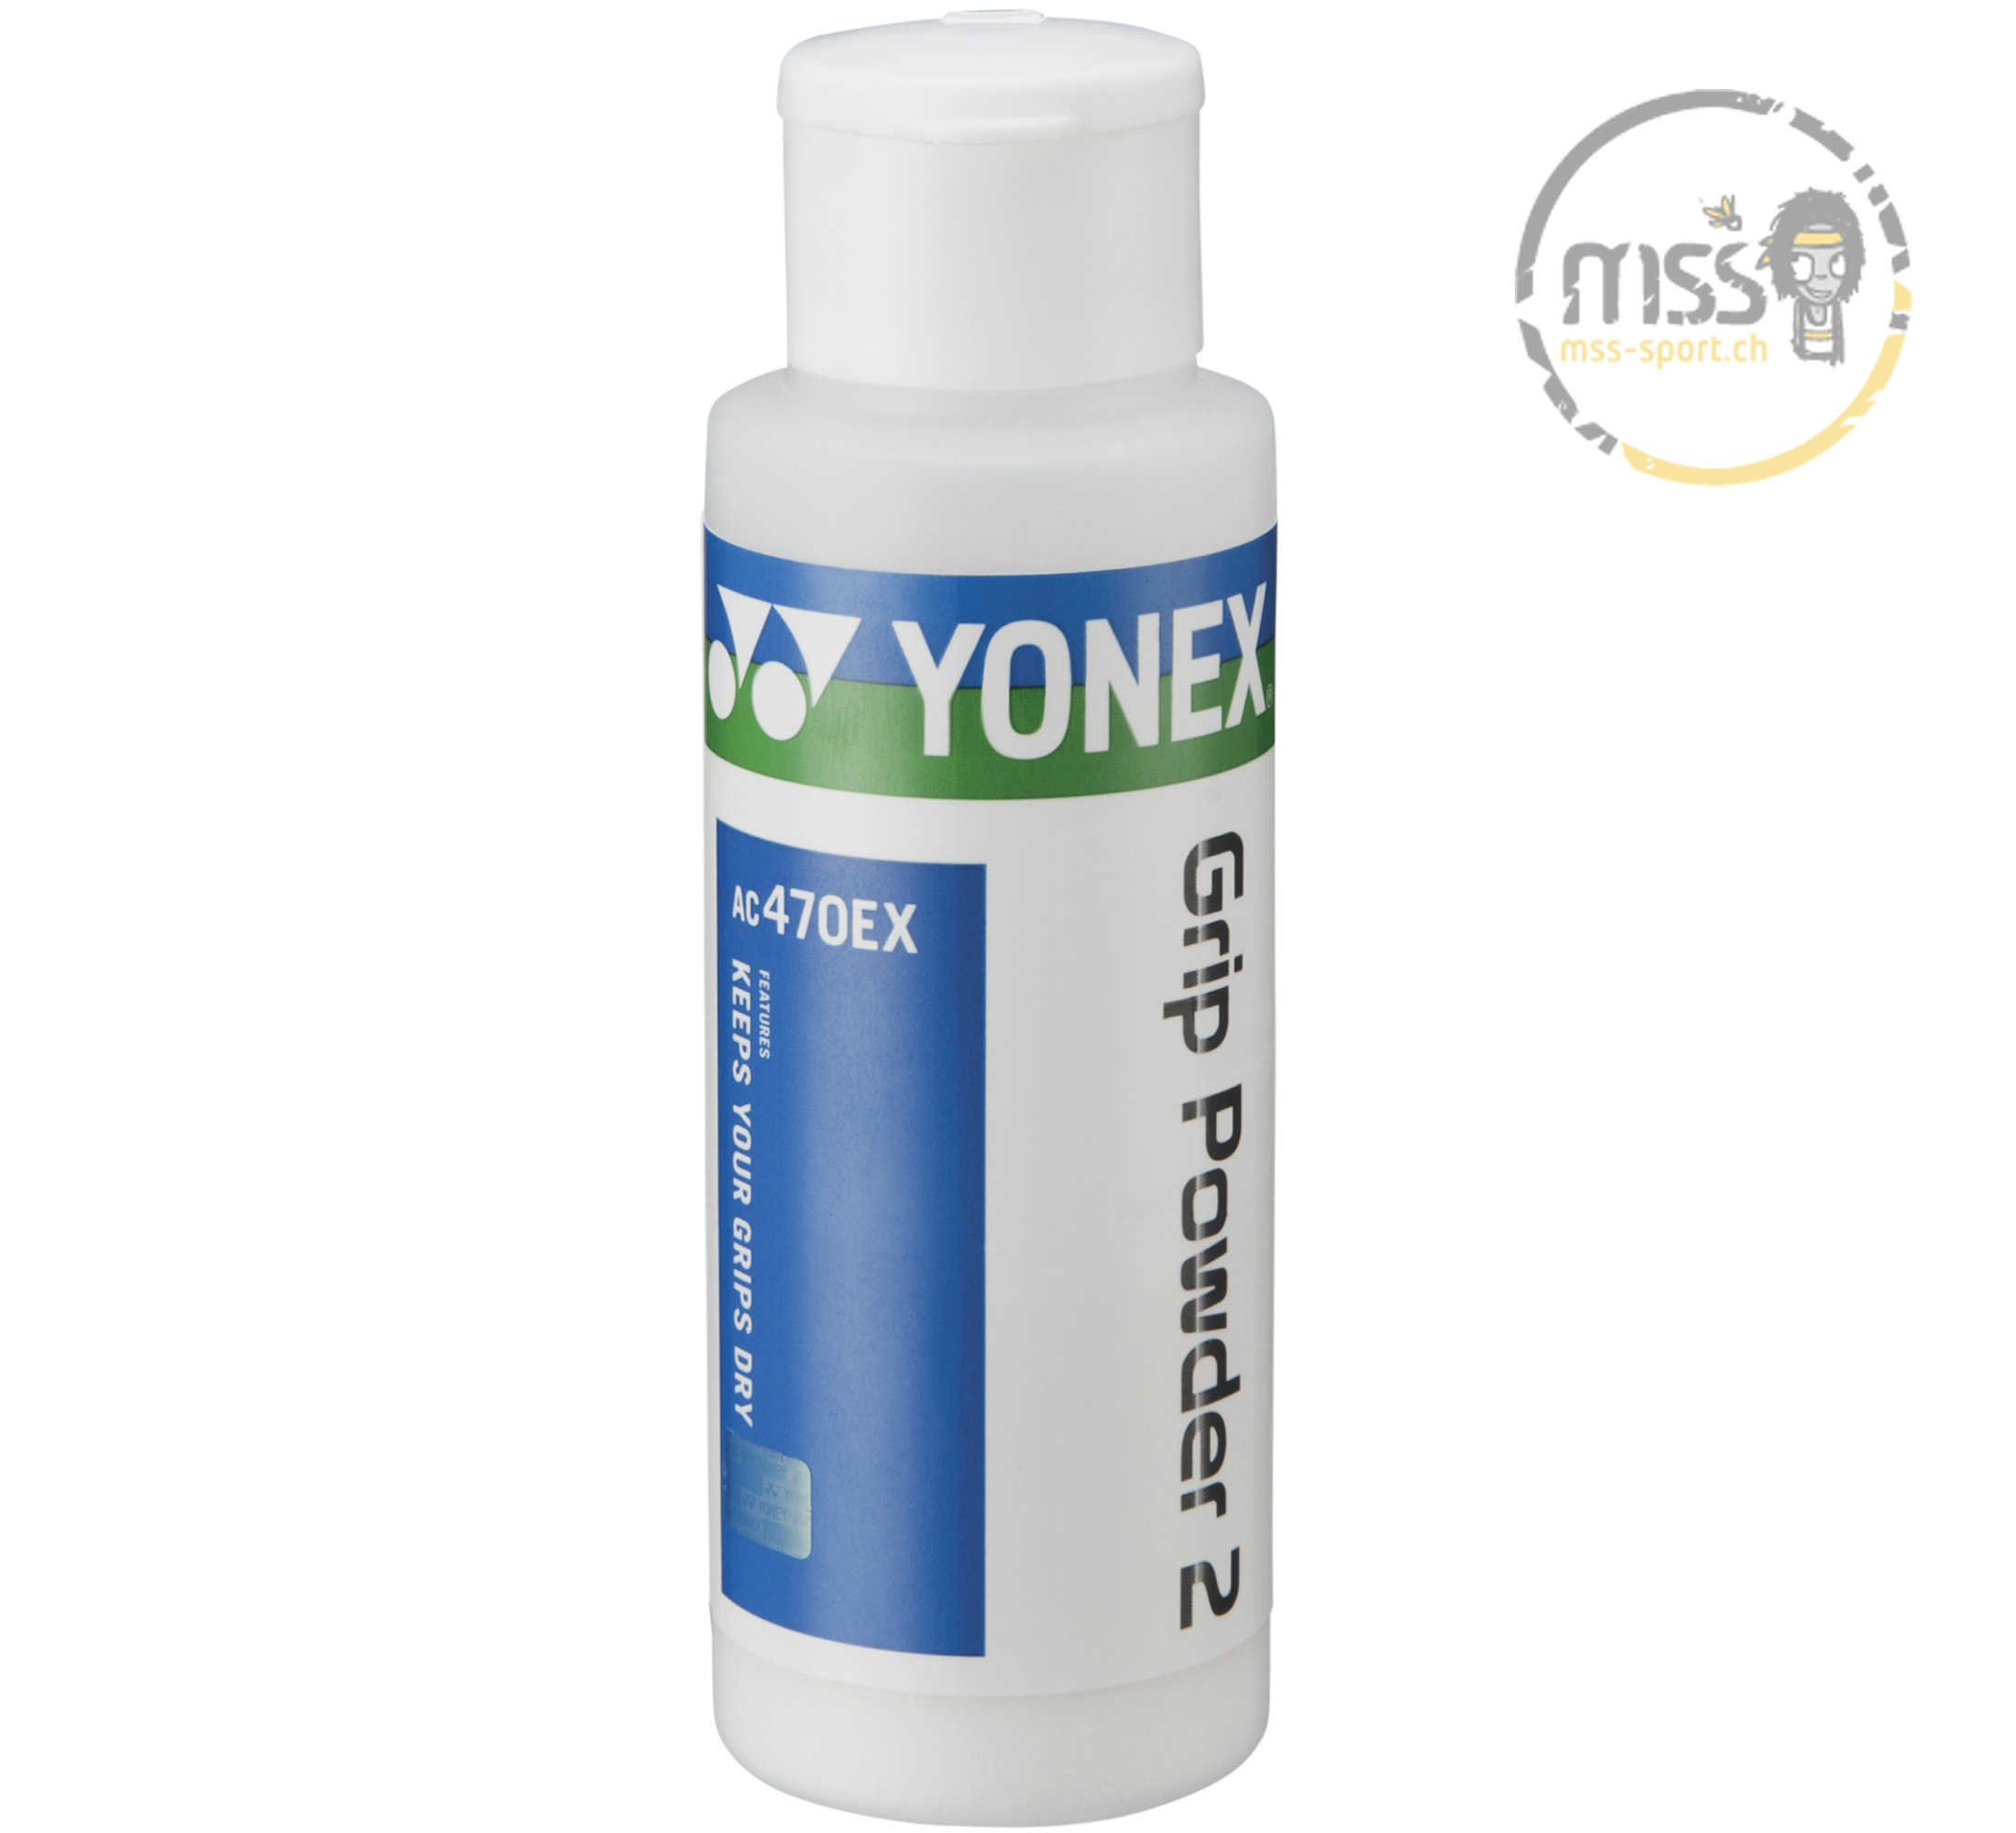 Yonex Grip Powder 2 AC 470